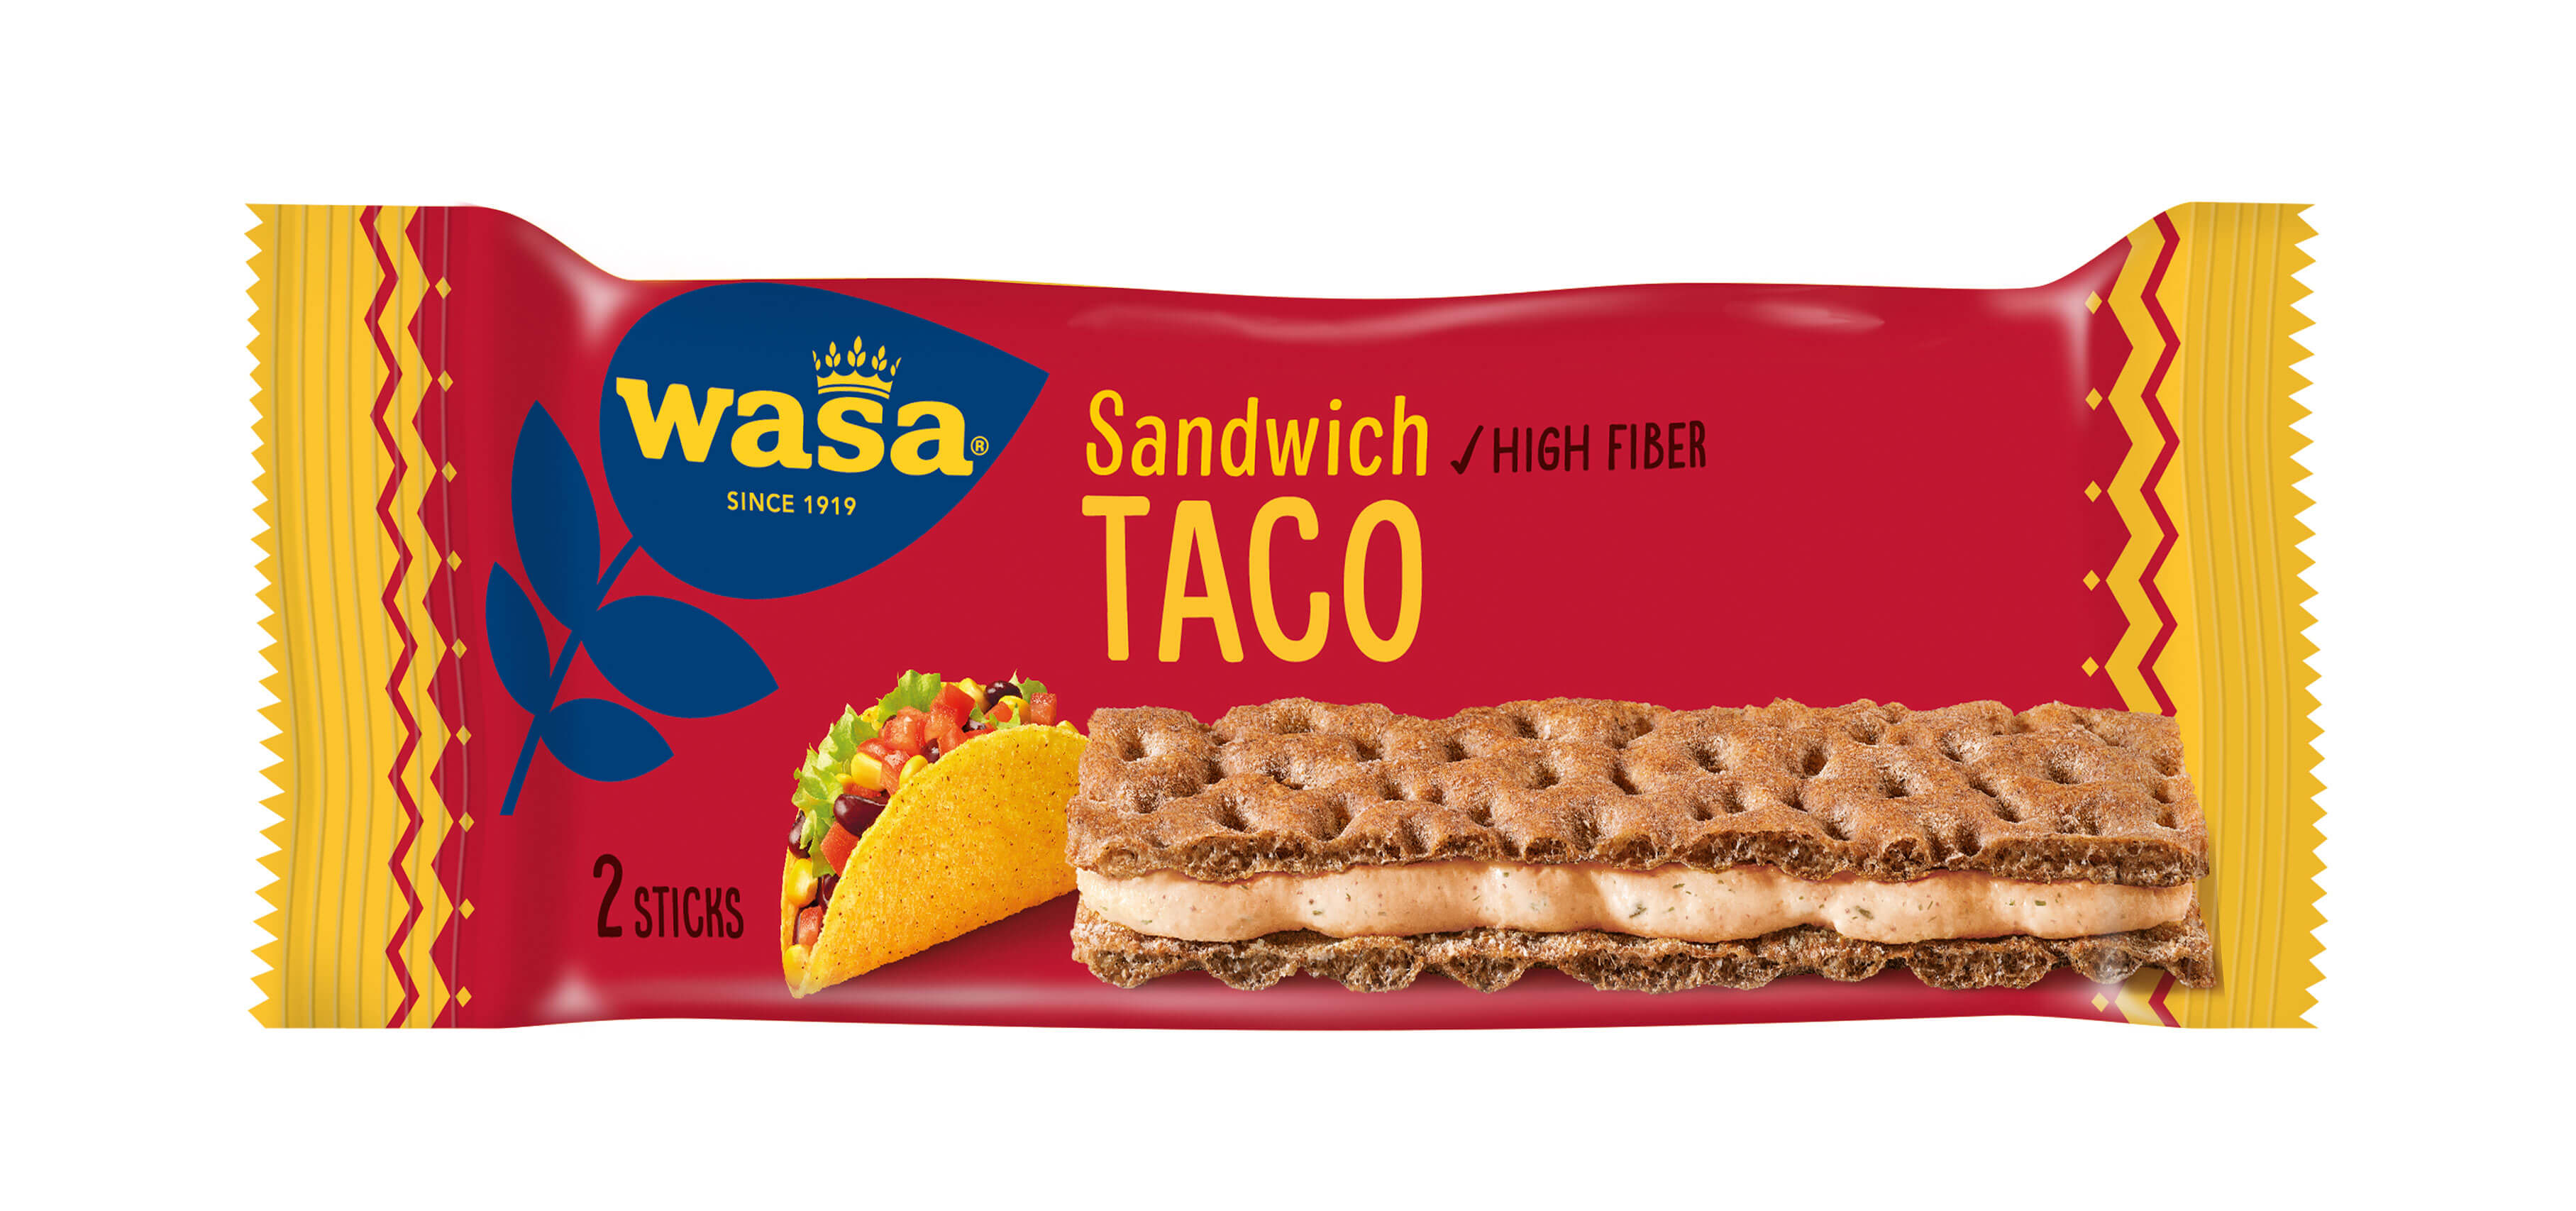 Wasa Sandwich Taco - Upptäck det perfekta mellanmålet, krispigt och gott knäckebröd med krämig fyllning. Perfekt som mellanmål på språng och som tips på mellanmål barn, efter skolan eller innan träning.